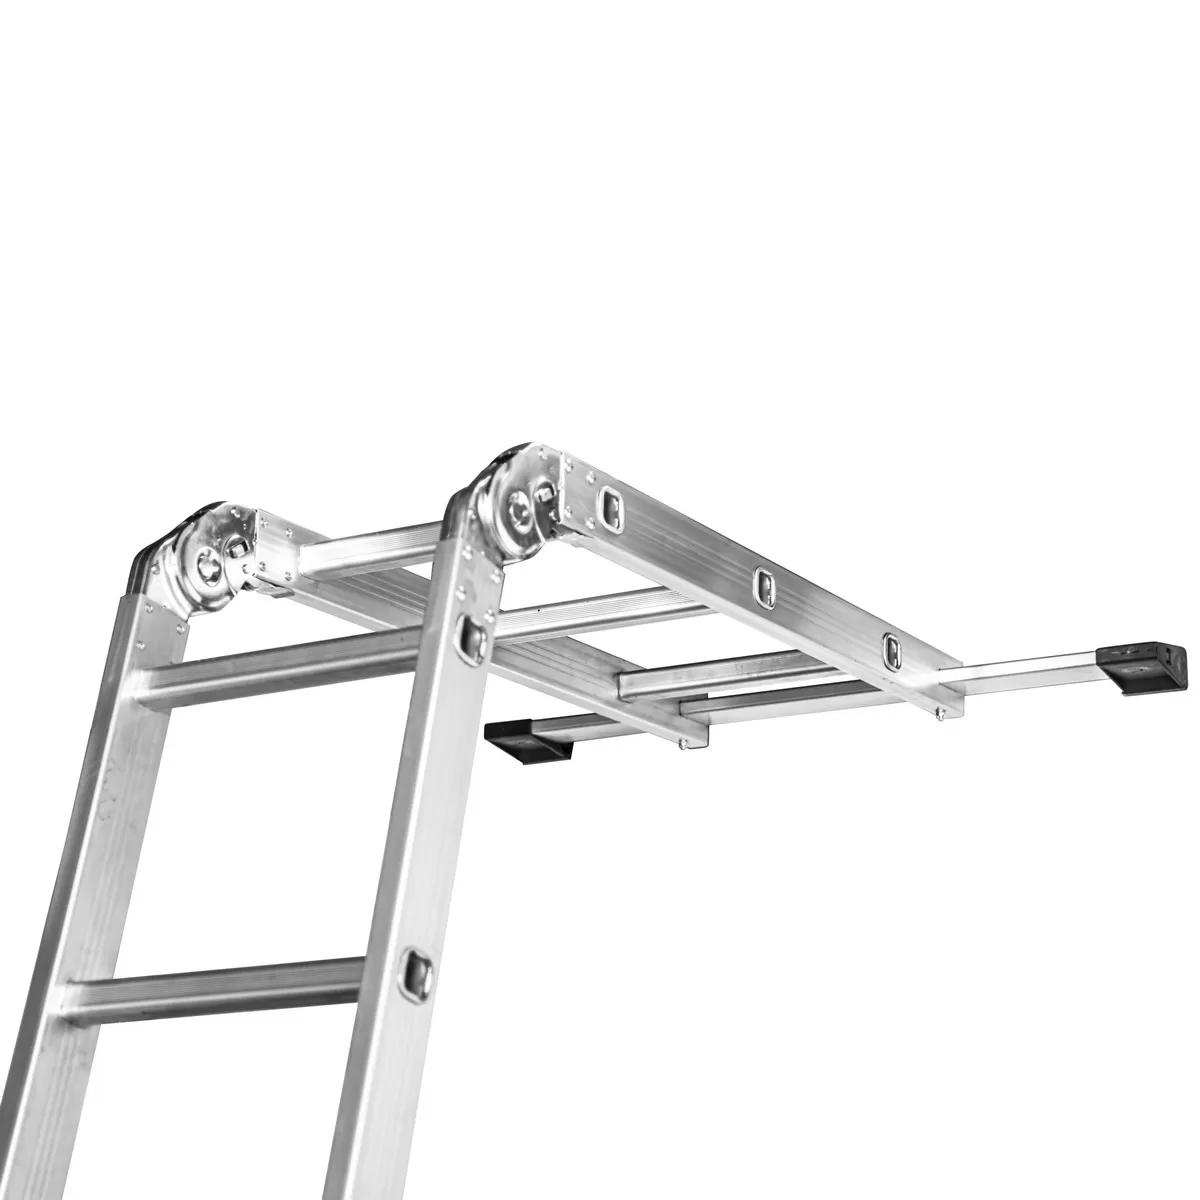 Aluminium ladder collapsible 